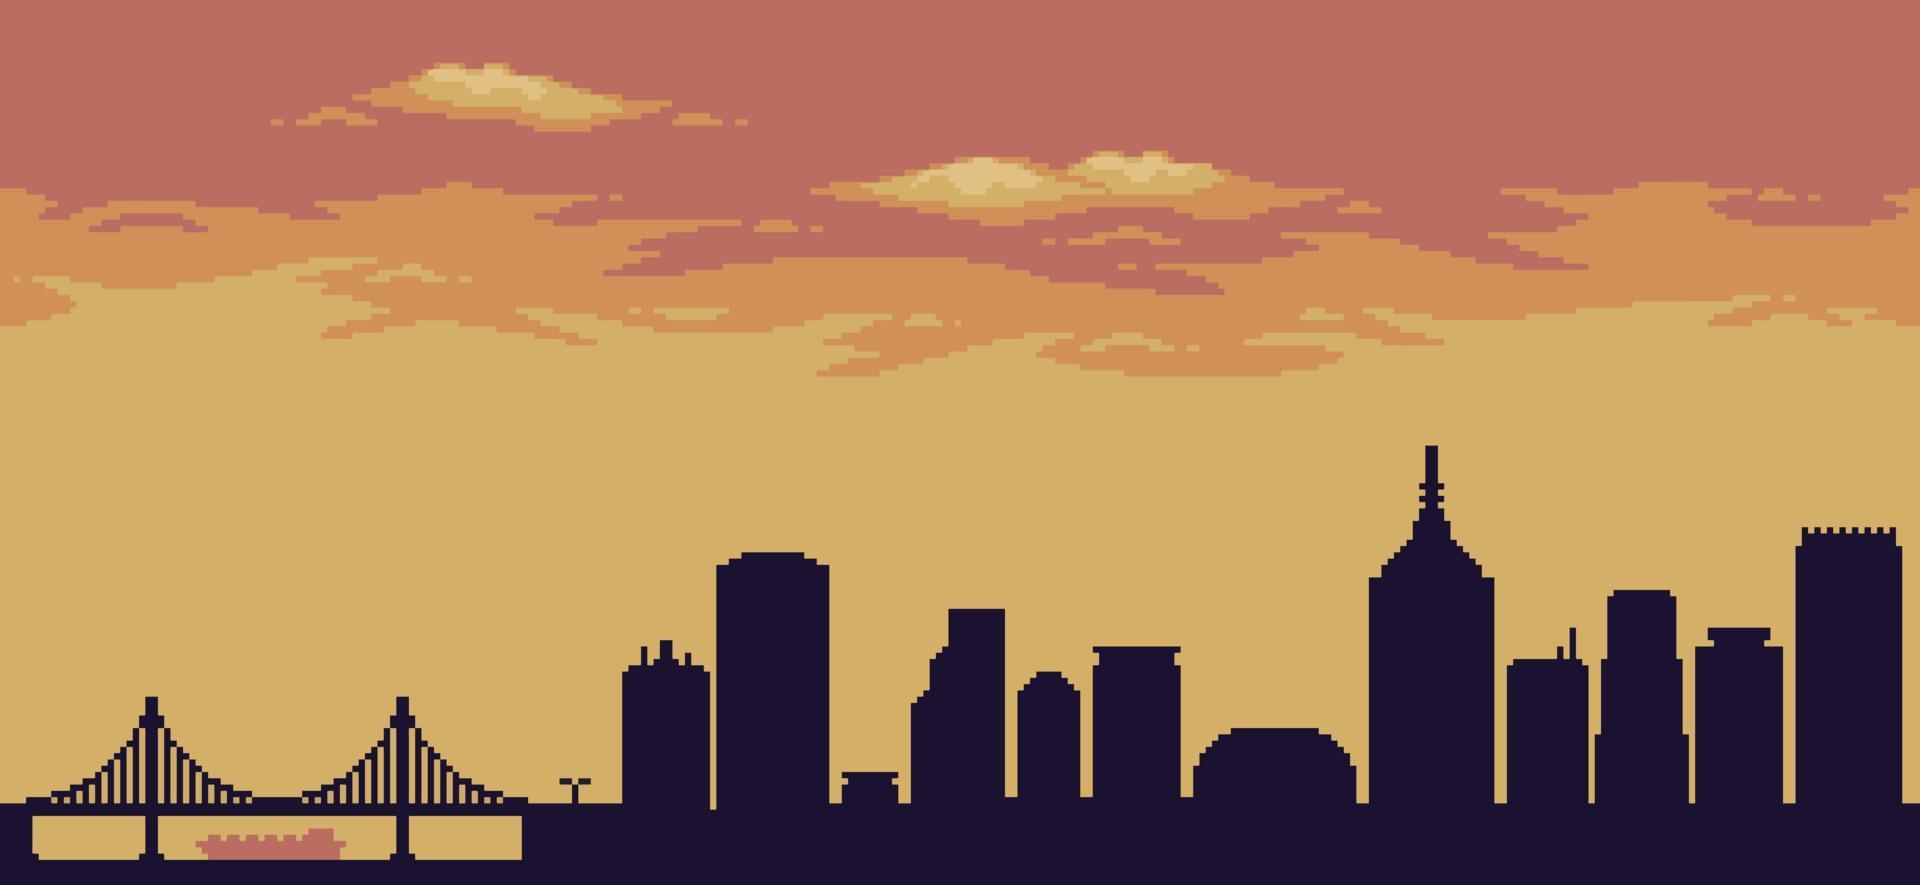 Pixel Art City Hintergrund bei Sonnenuntergang mit Gebäuden, Konstruktionen, Brücke und bewölktem Himmel für 8-Bit-Spiel vektor